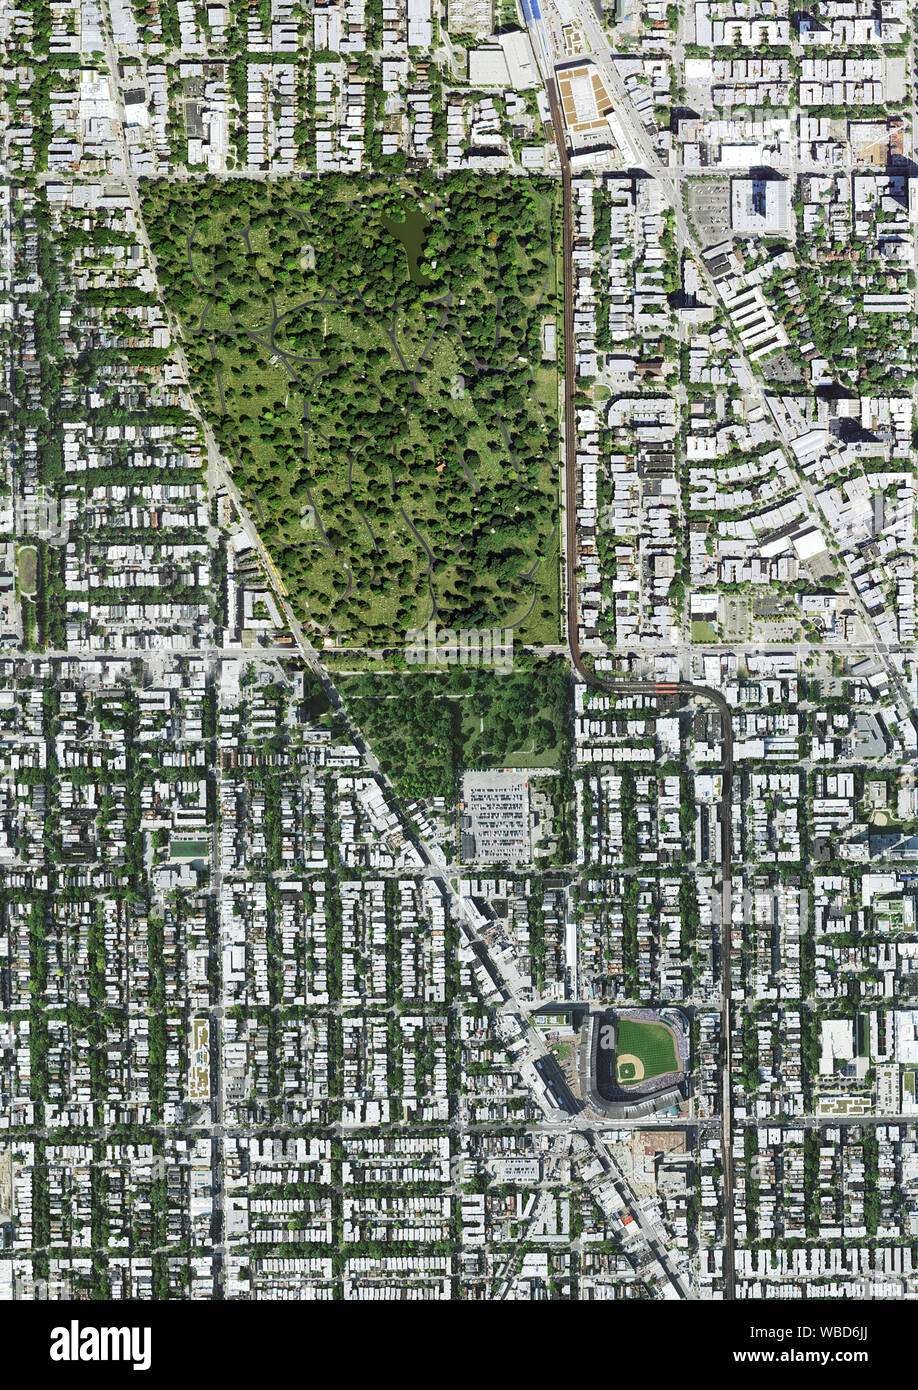 Luftaufnahmen von Wrigley Field und Graceland Cemetery, Chicago, Illinois, USA. Bild gesammelt am 3. September 2017. Stockfoto